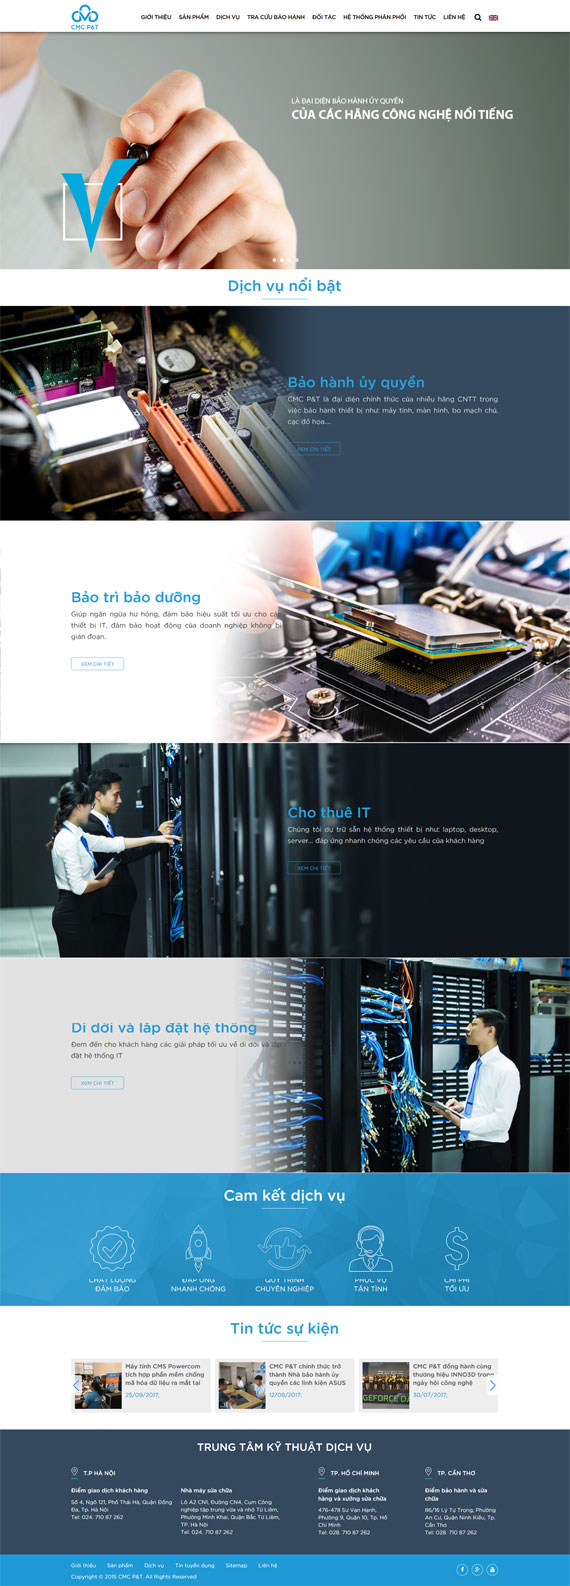 Thiết kế giao diện website Tập đoàn Công nghệ CMC tại ADC Việt Nam